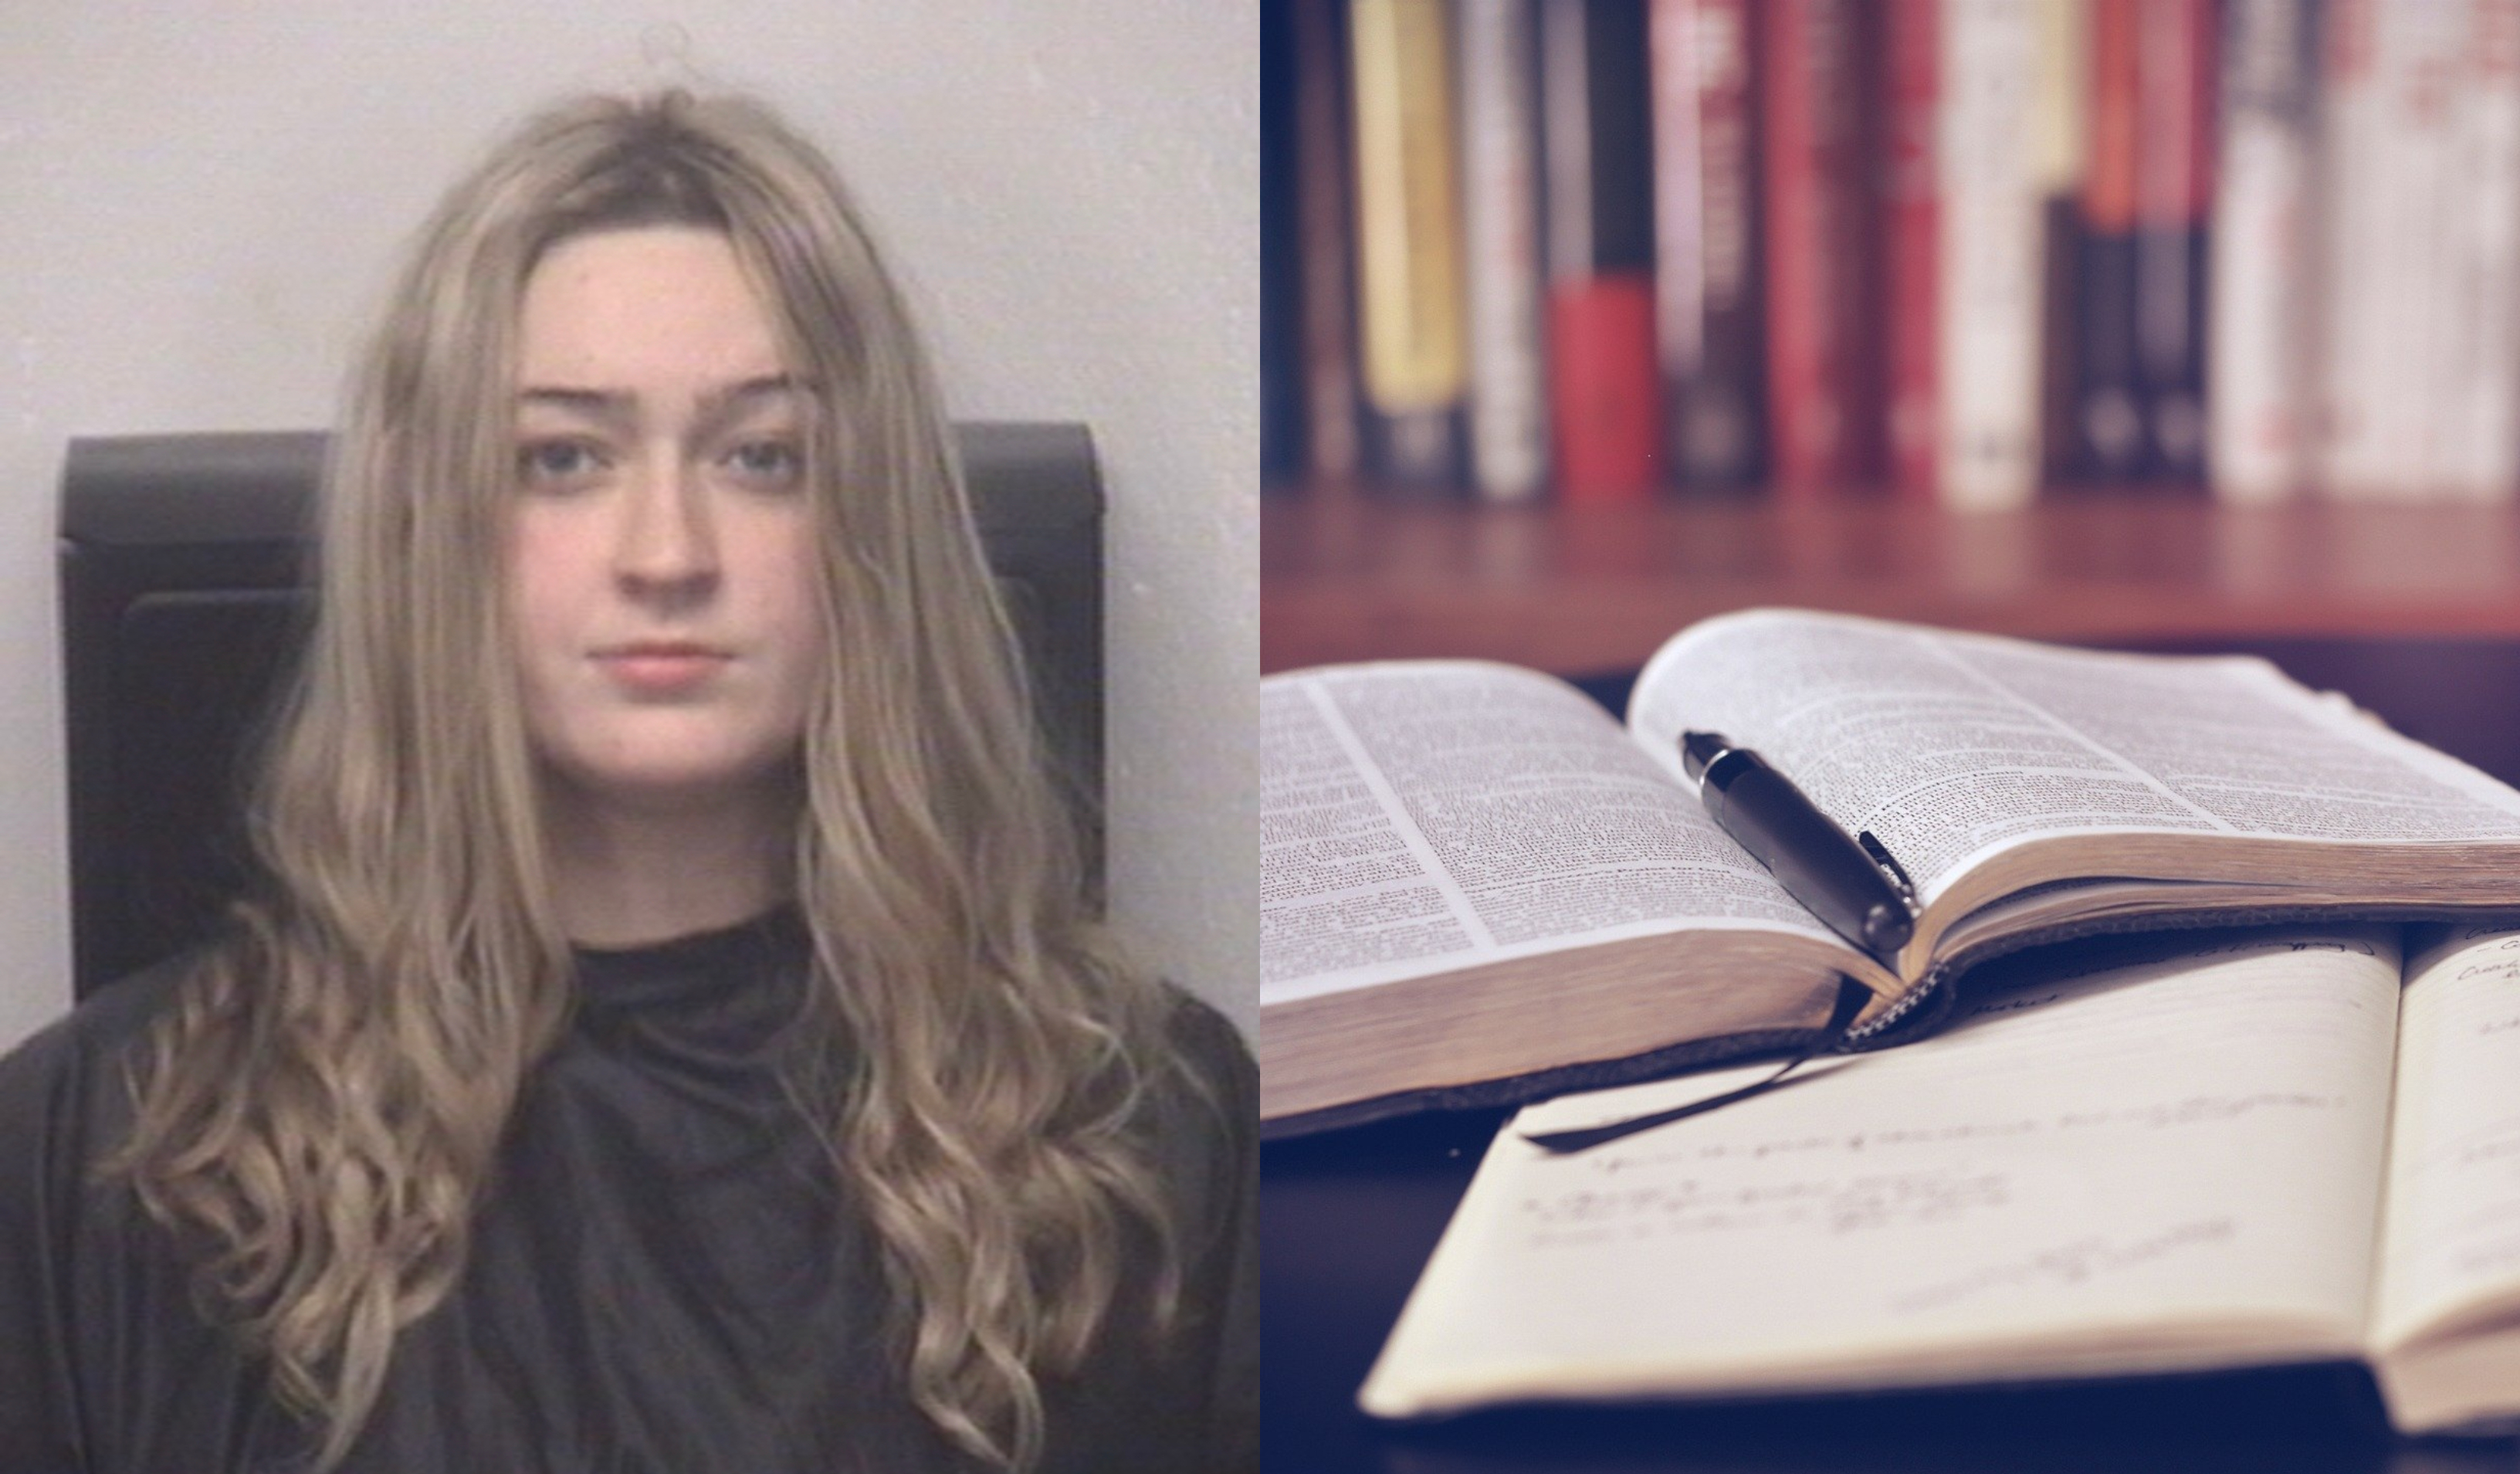 Emily Dunden fue acusada por varios cargos luego de sus acciones. (Foto Prensa Libre: @kenlemonWSOC9/Twitter y Pixabay)